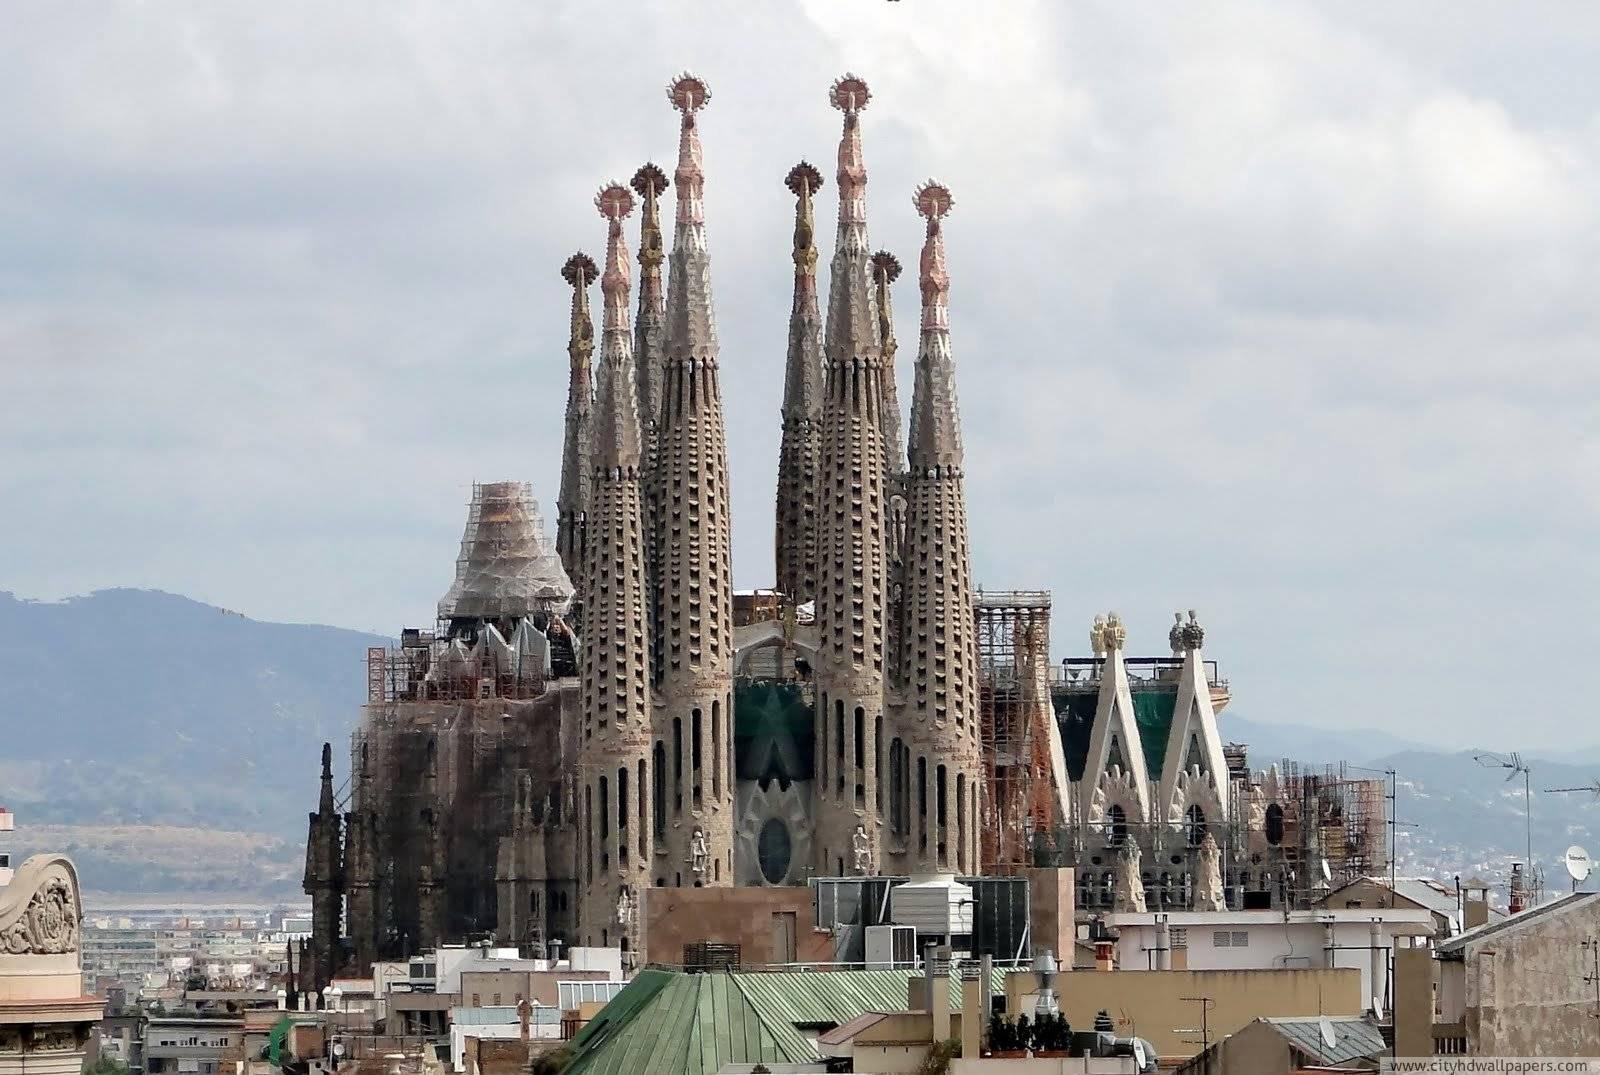 The magnificent la sagrada familia church in Barcelona